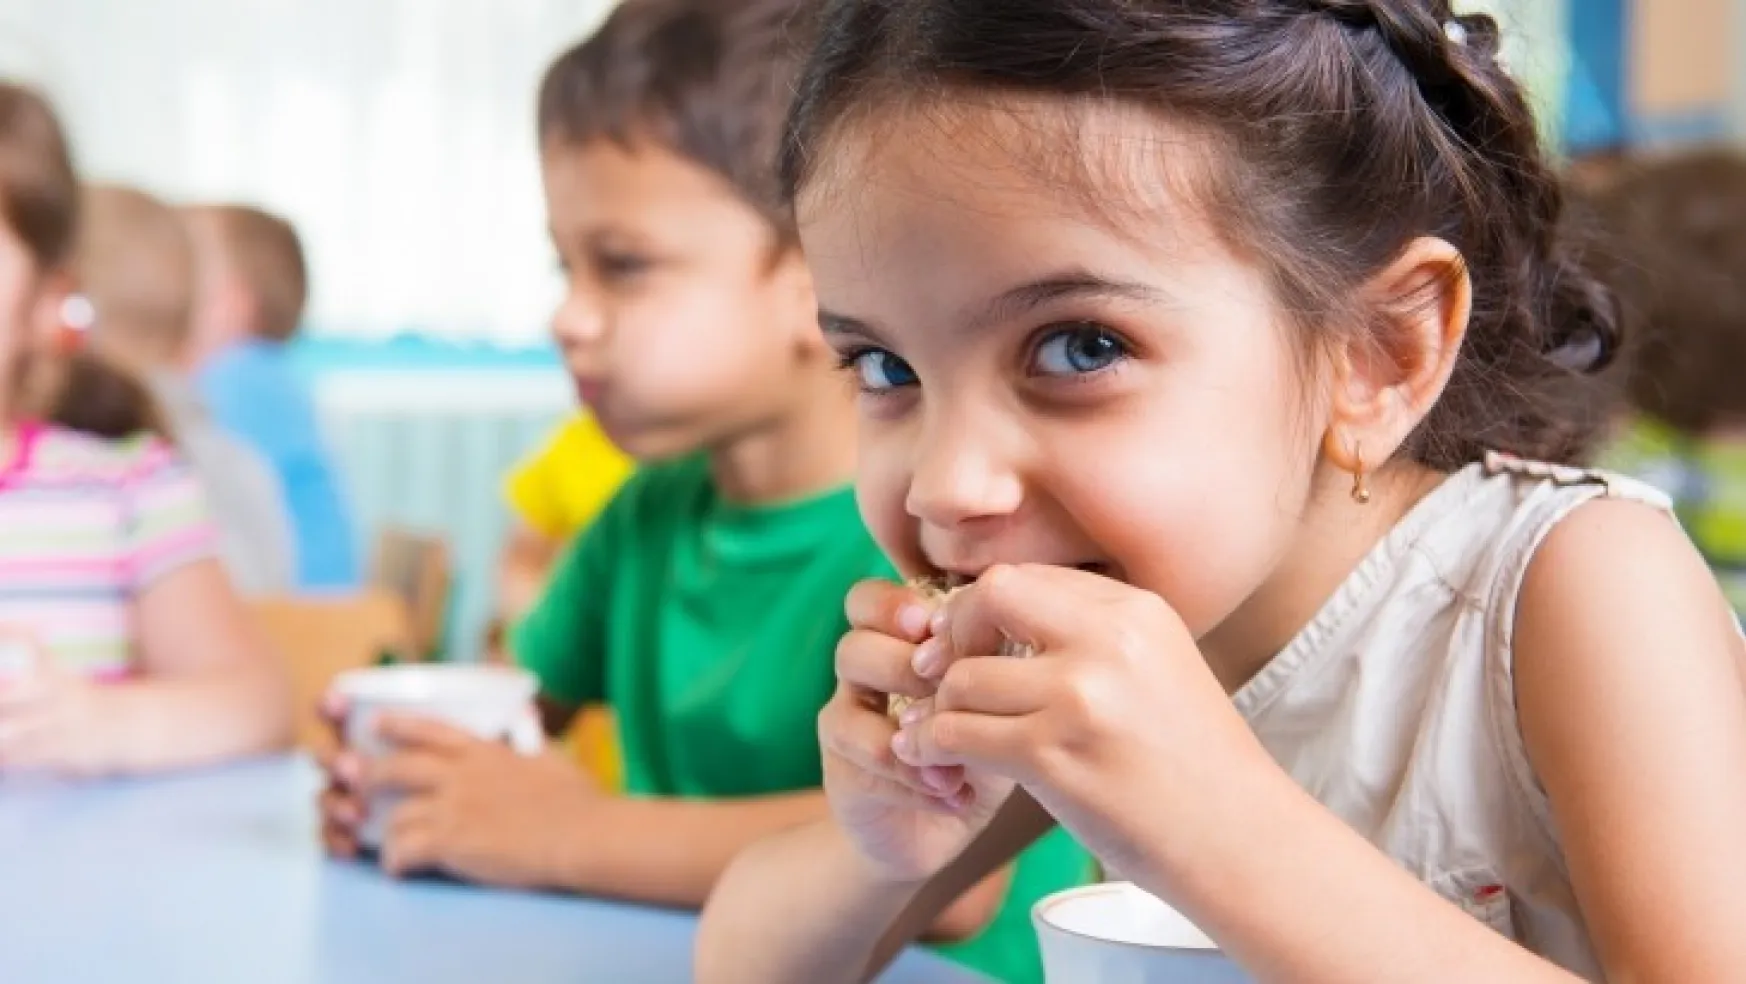 Az pişen ette böbrek yetmezliği riski çocukları daha fazla etkiliyor